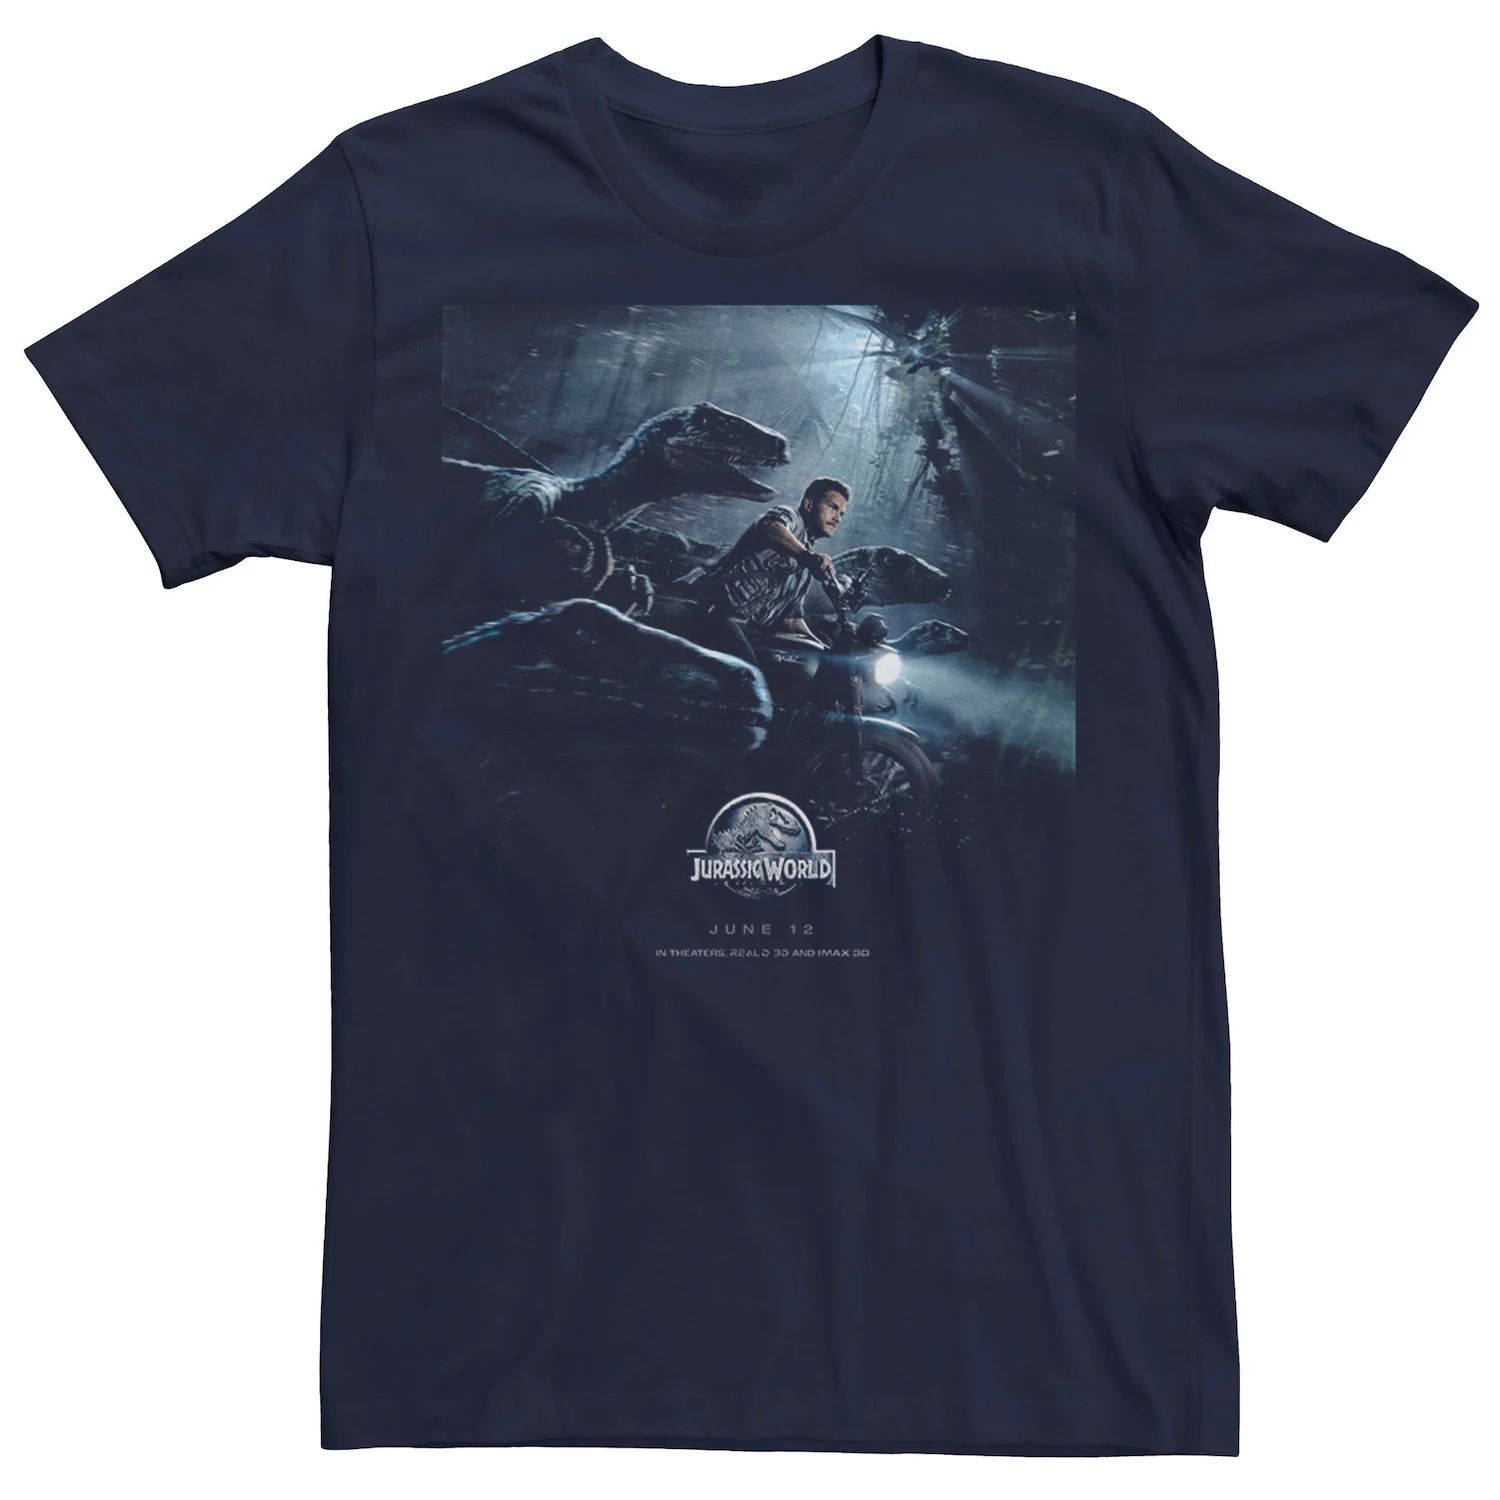 Мужская футболка с плакатом Owen Raptors Jurassic World цена и фото